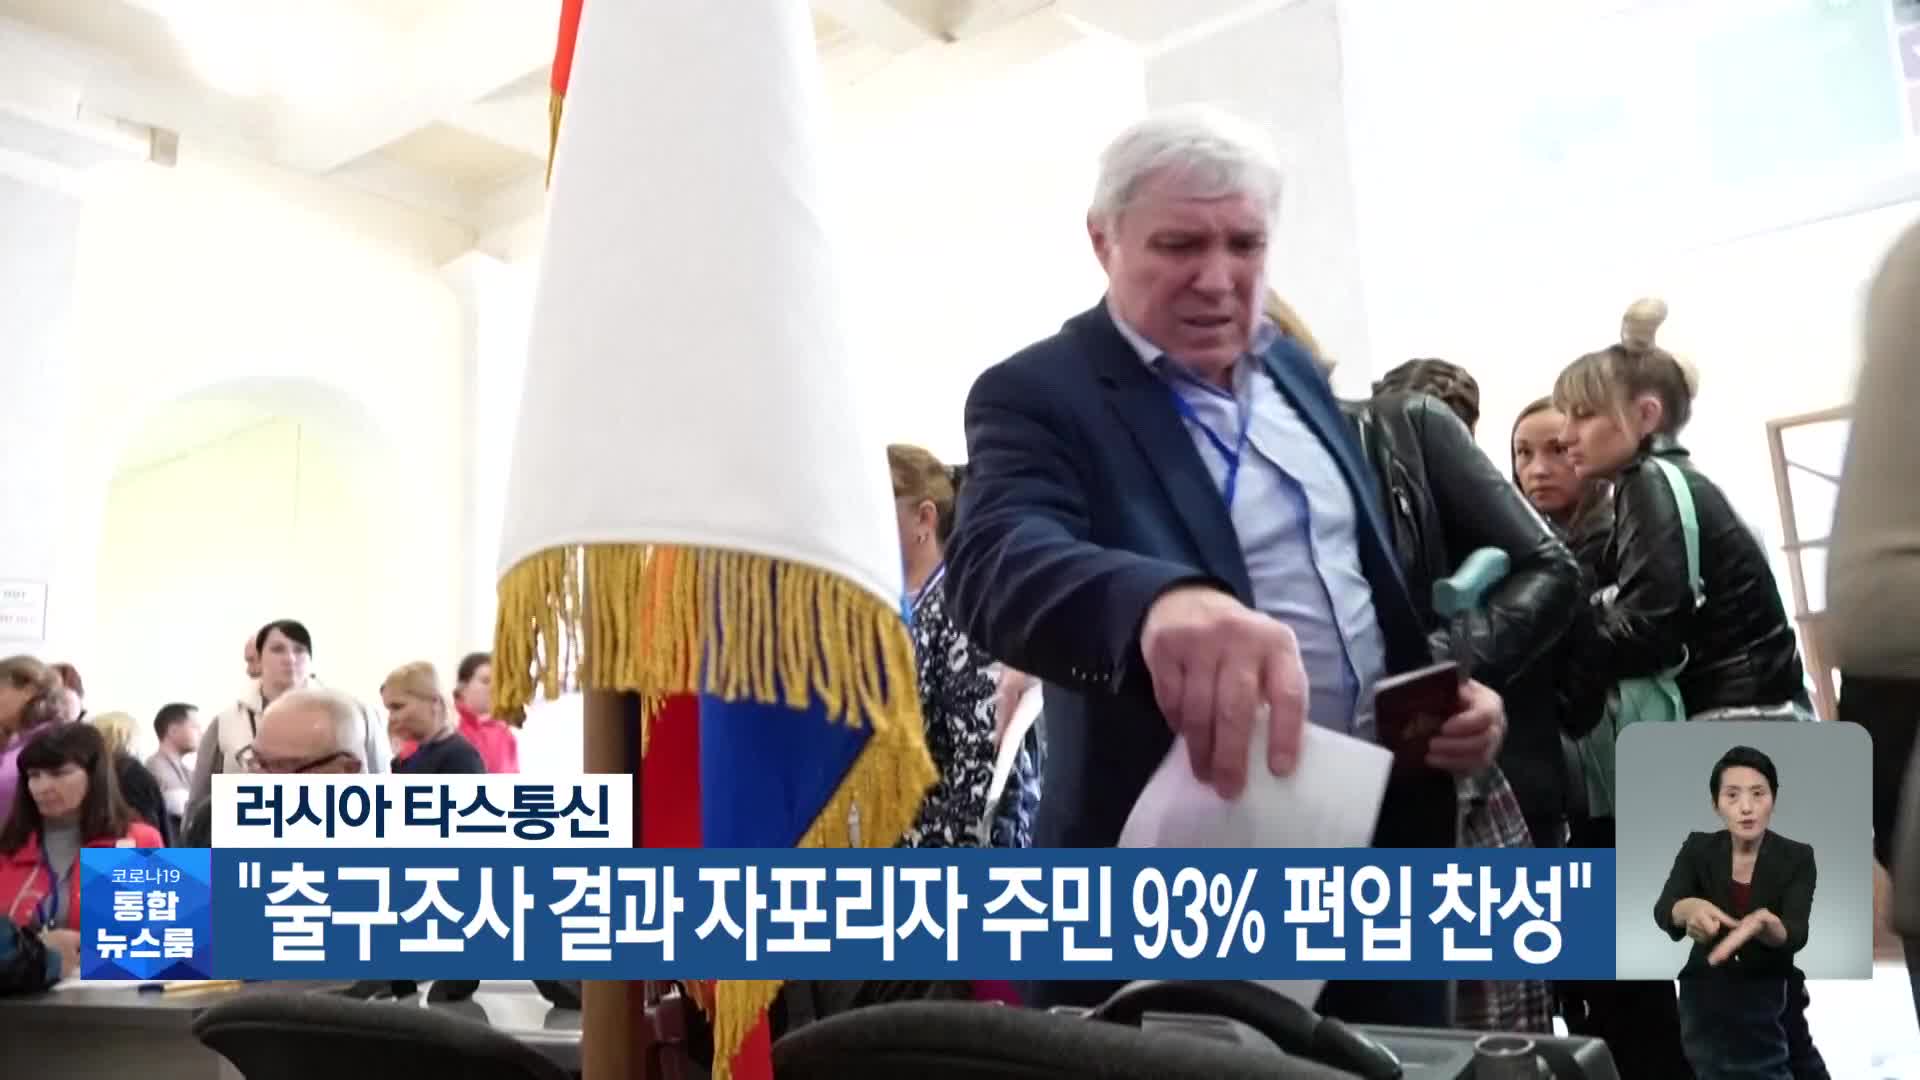 러시아 타스통신 “출구조사 결과 자포리자 주민 93% 편입 찬성”